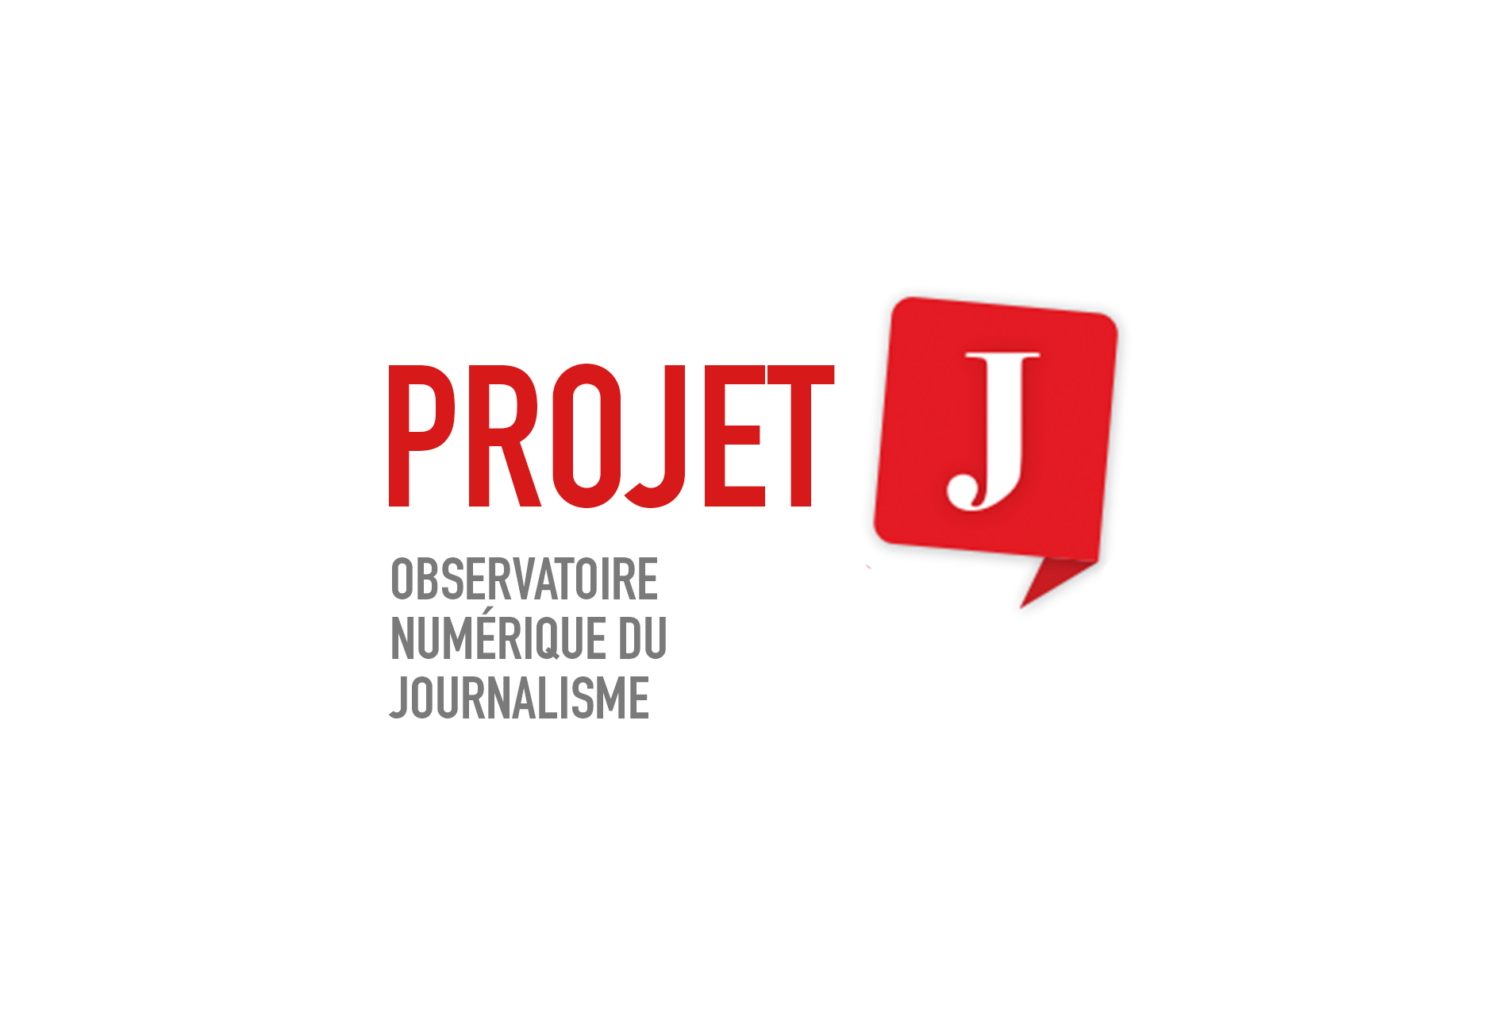 ProjetJ: Observatoire numérique du journalisme